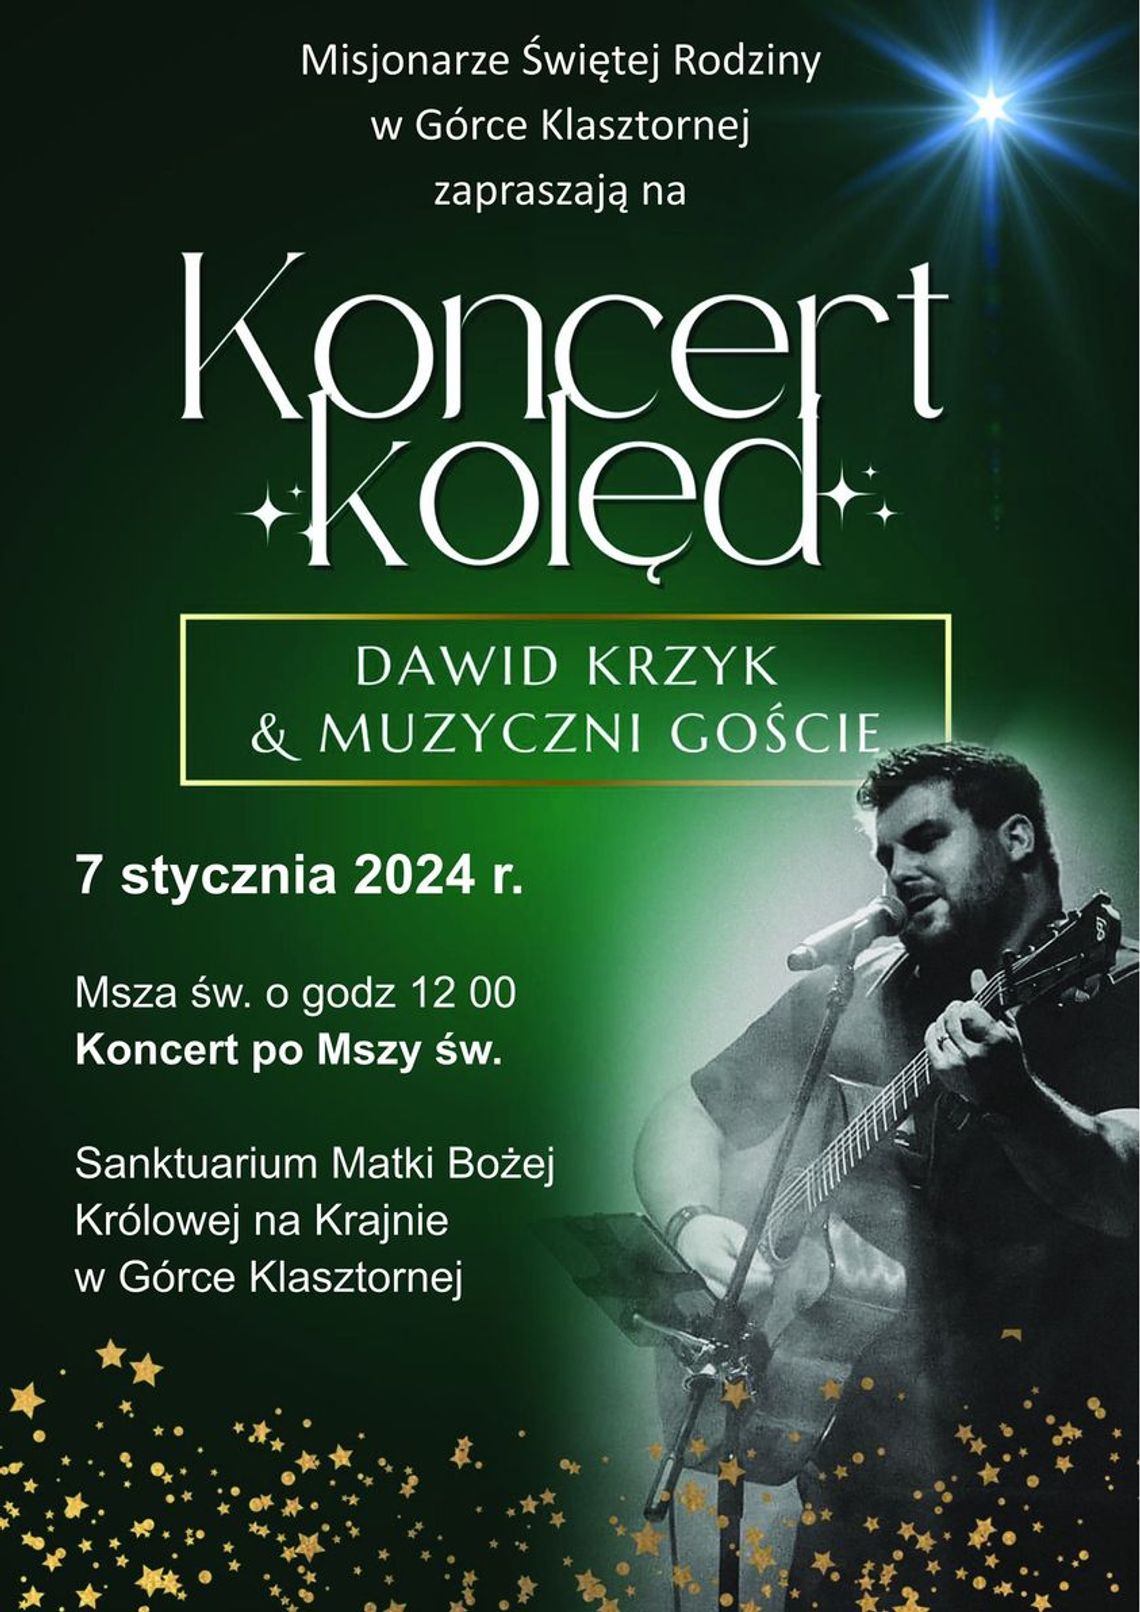 Koncert kolęd w Górce Klasztornej. Wystąpi Dawid Krzyk.